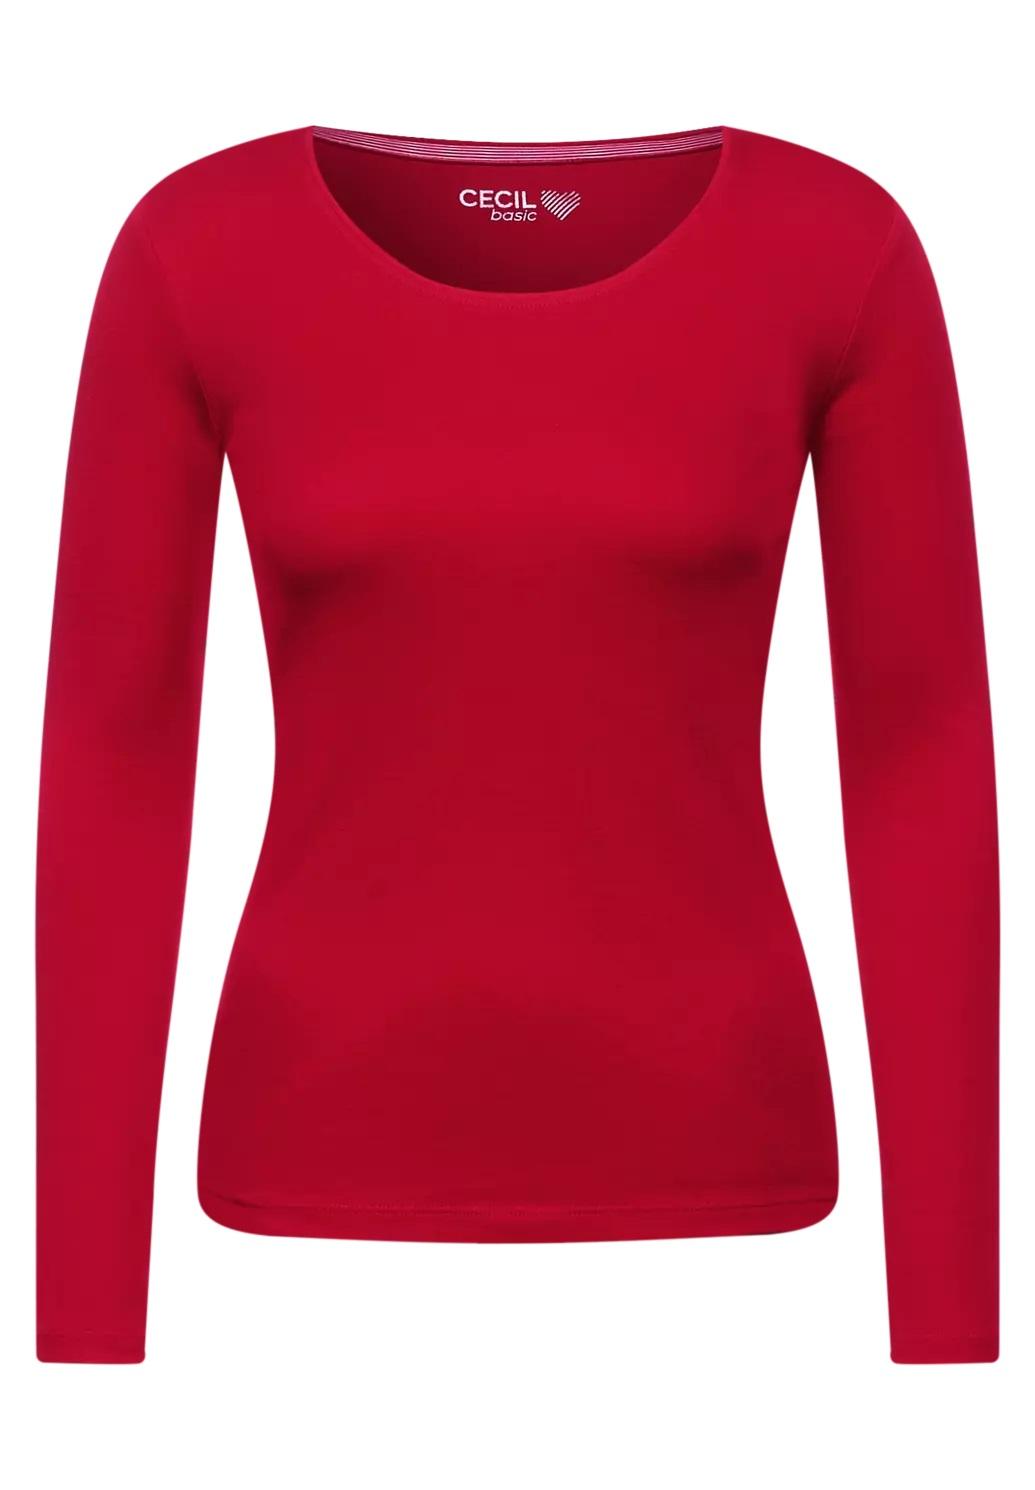 CECIL tričko PIA, červené